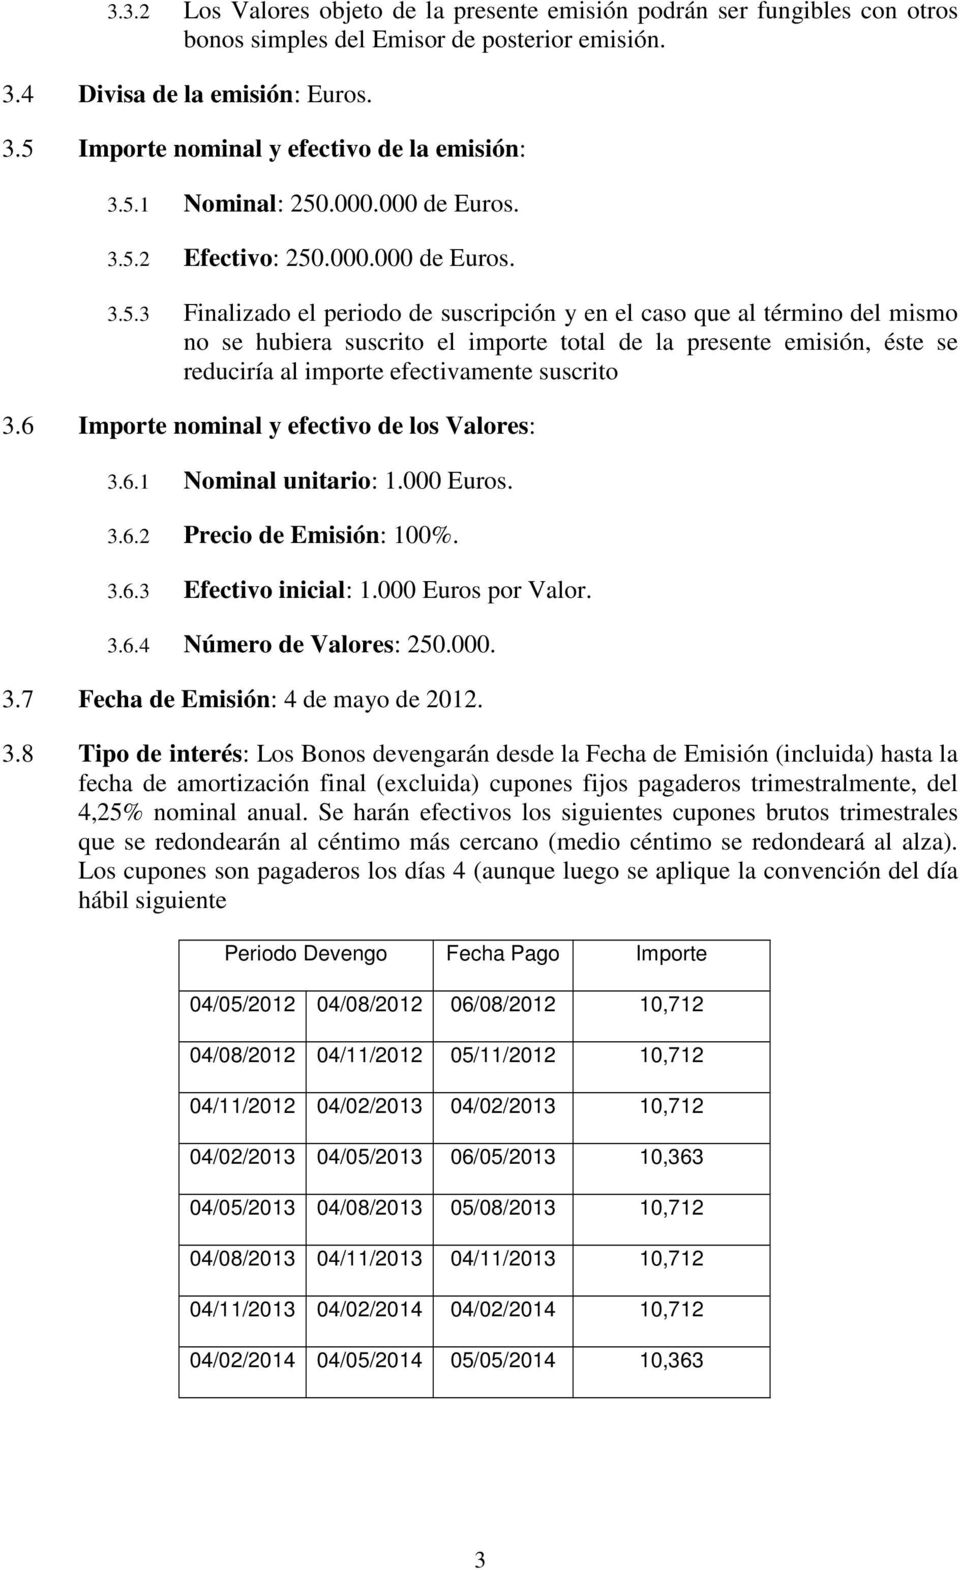 6 Importe nominal y efectivo de los Valores: 3.6.1 Nominal unitario: 1.000 Euros. 3.6.2 Precio de Emisión: 100%. 3.6.3 Efectivo inicial: 1.000 Euros por Valor. 3.6.4 Número de Valores: 250.000. 3.7 Fecha de Emisión: 4 de mayo de 2012.